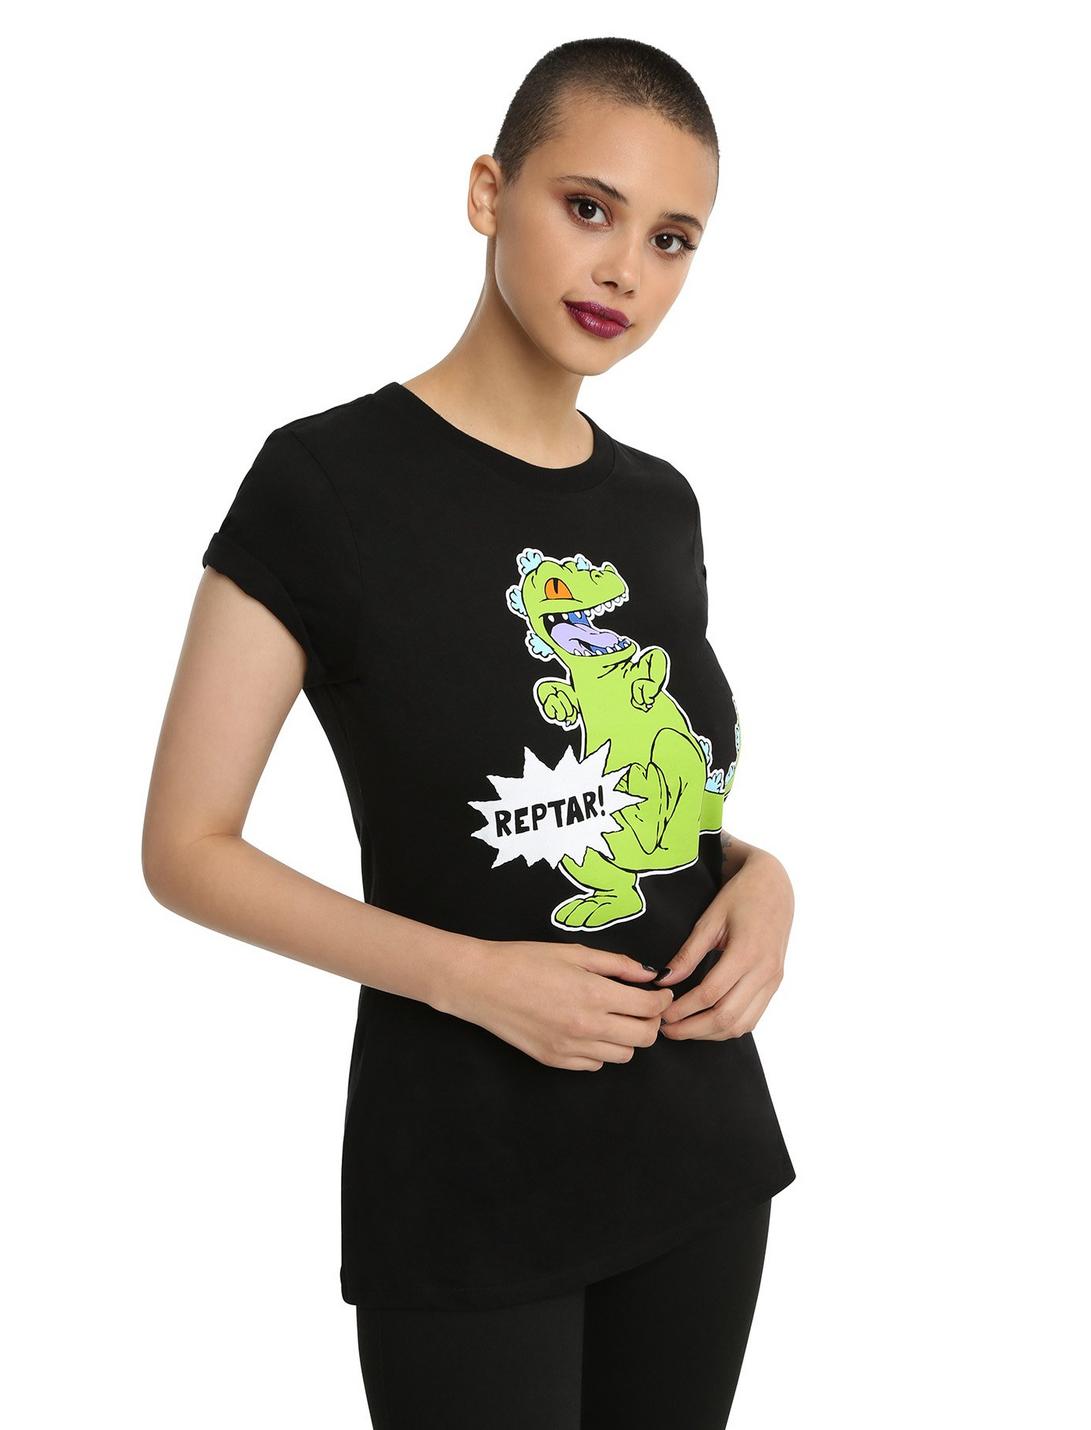 Rugrats Reptar Girls T-Shirt, BLACK, hi-res